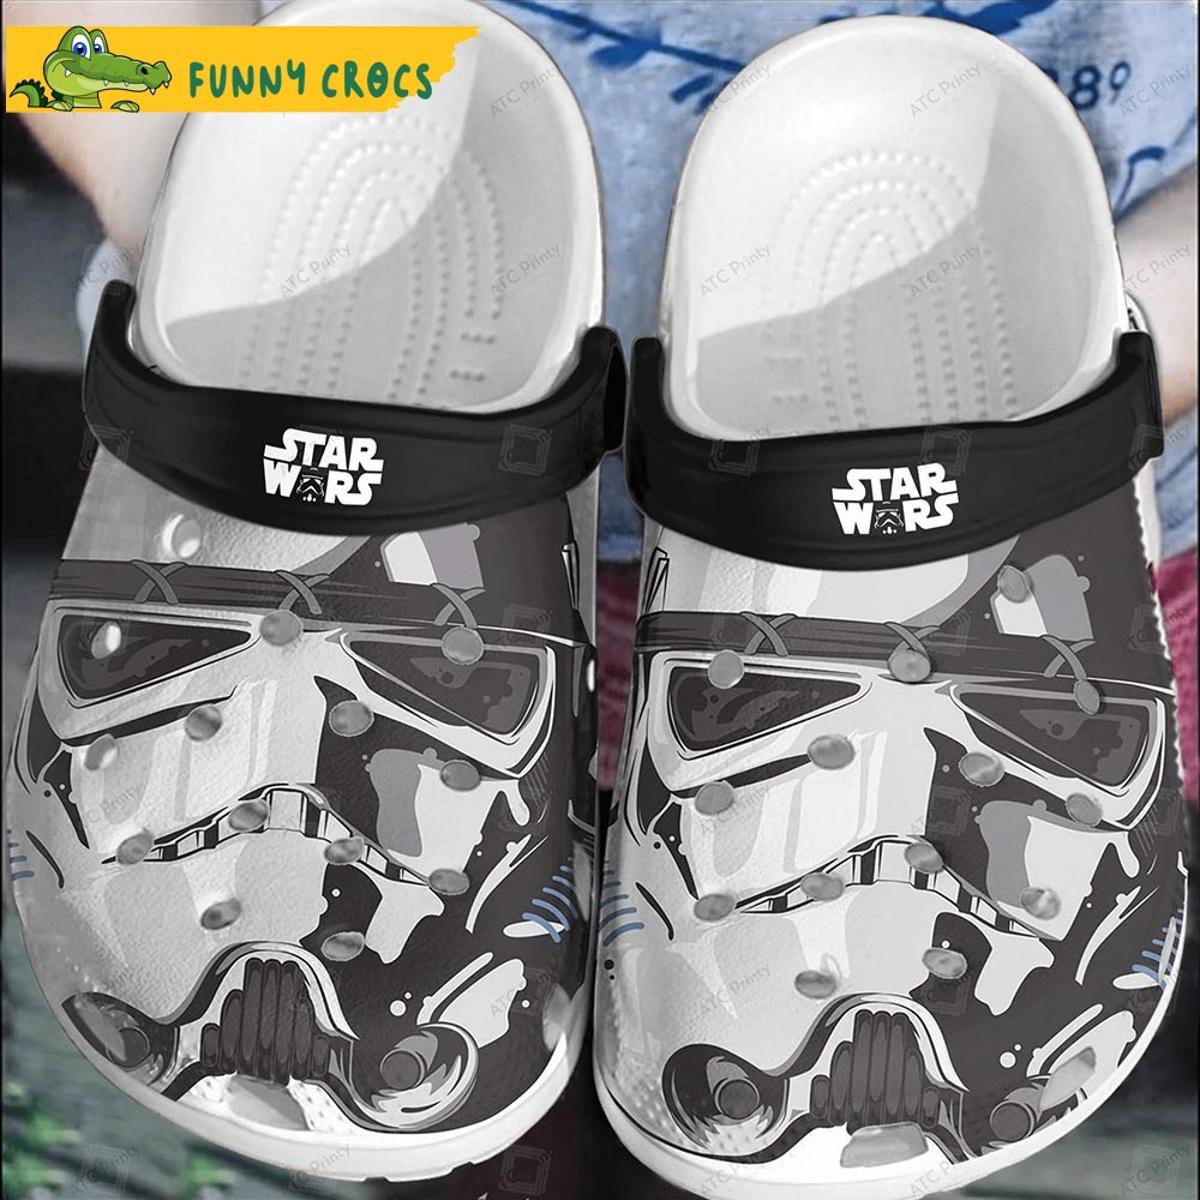 The Face Darth Vader Star Wars Crocs Shoes